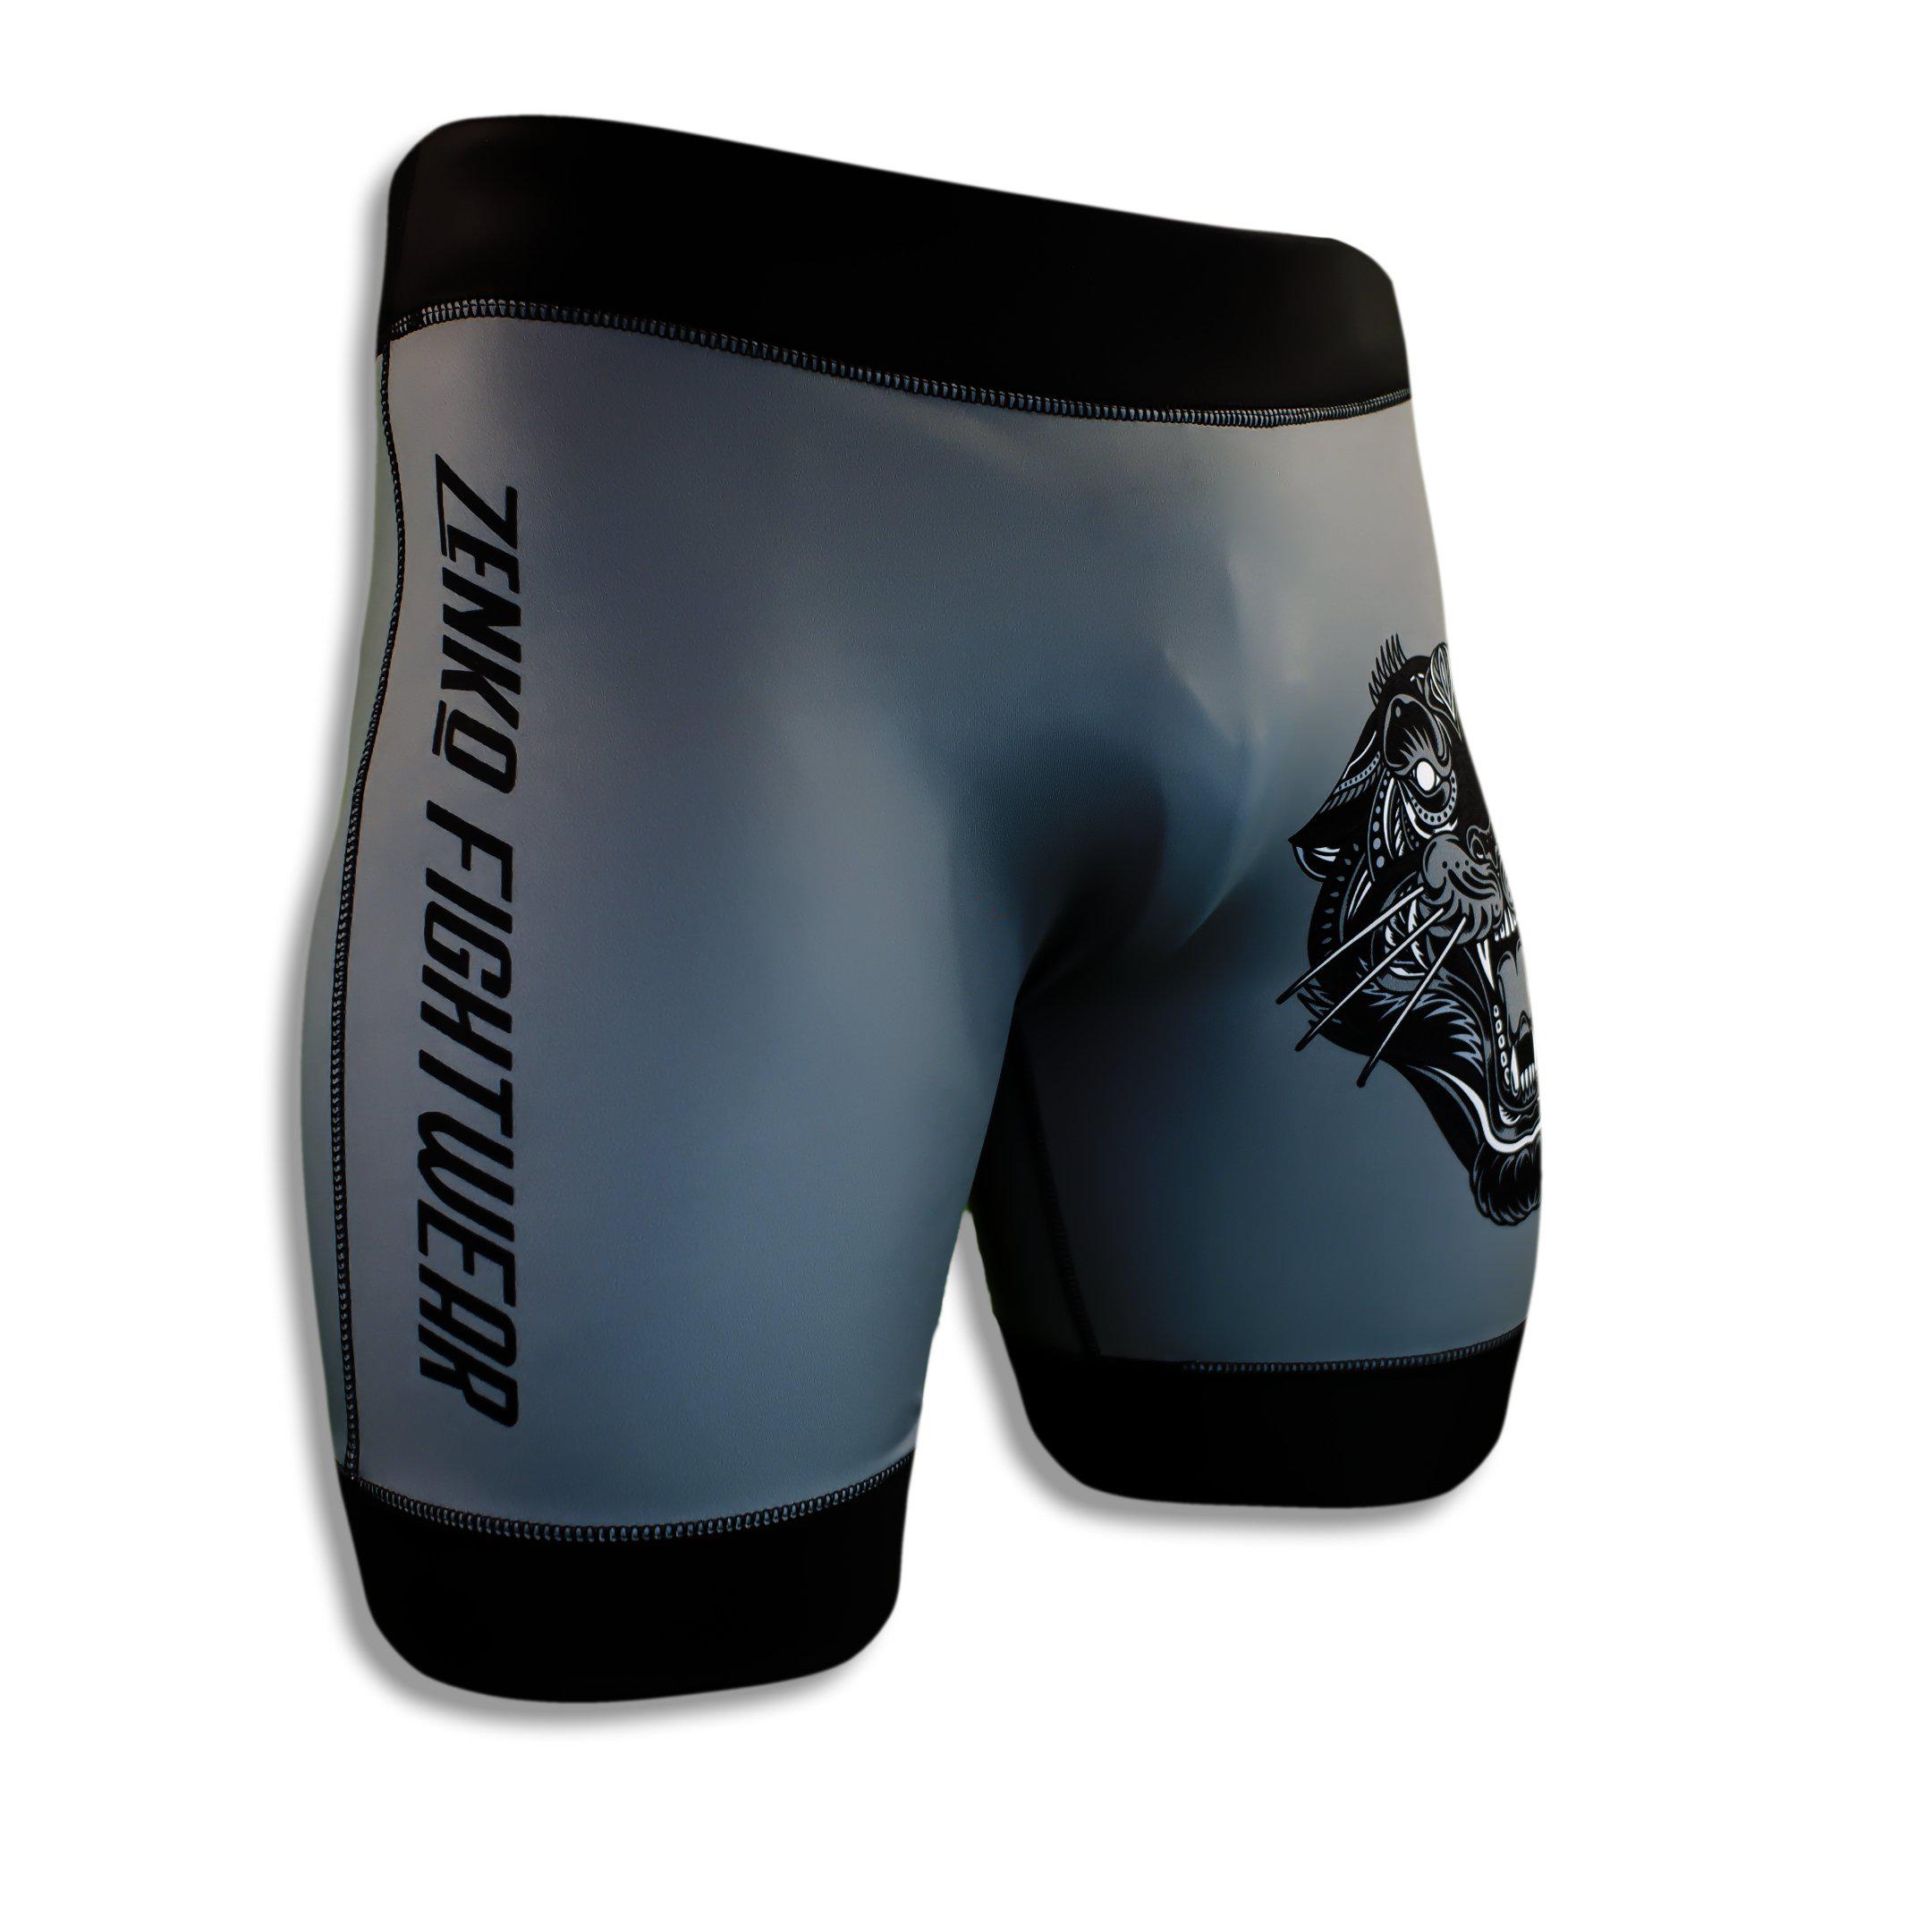 Panther Vale Tudo Shorts - Zenko Fightwear